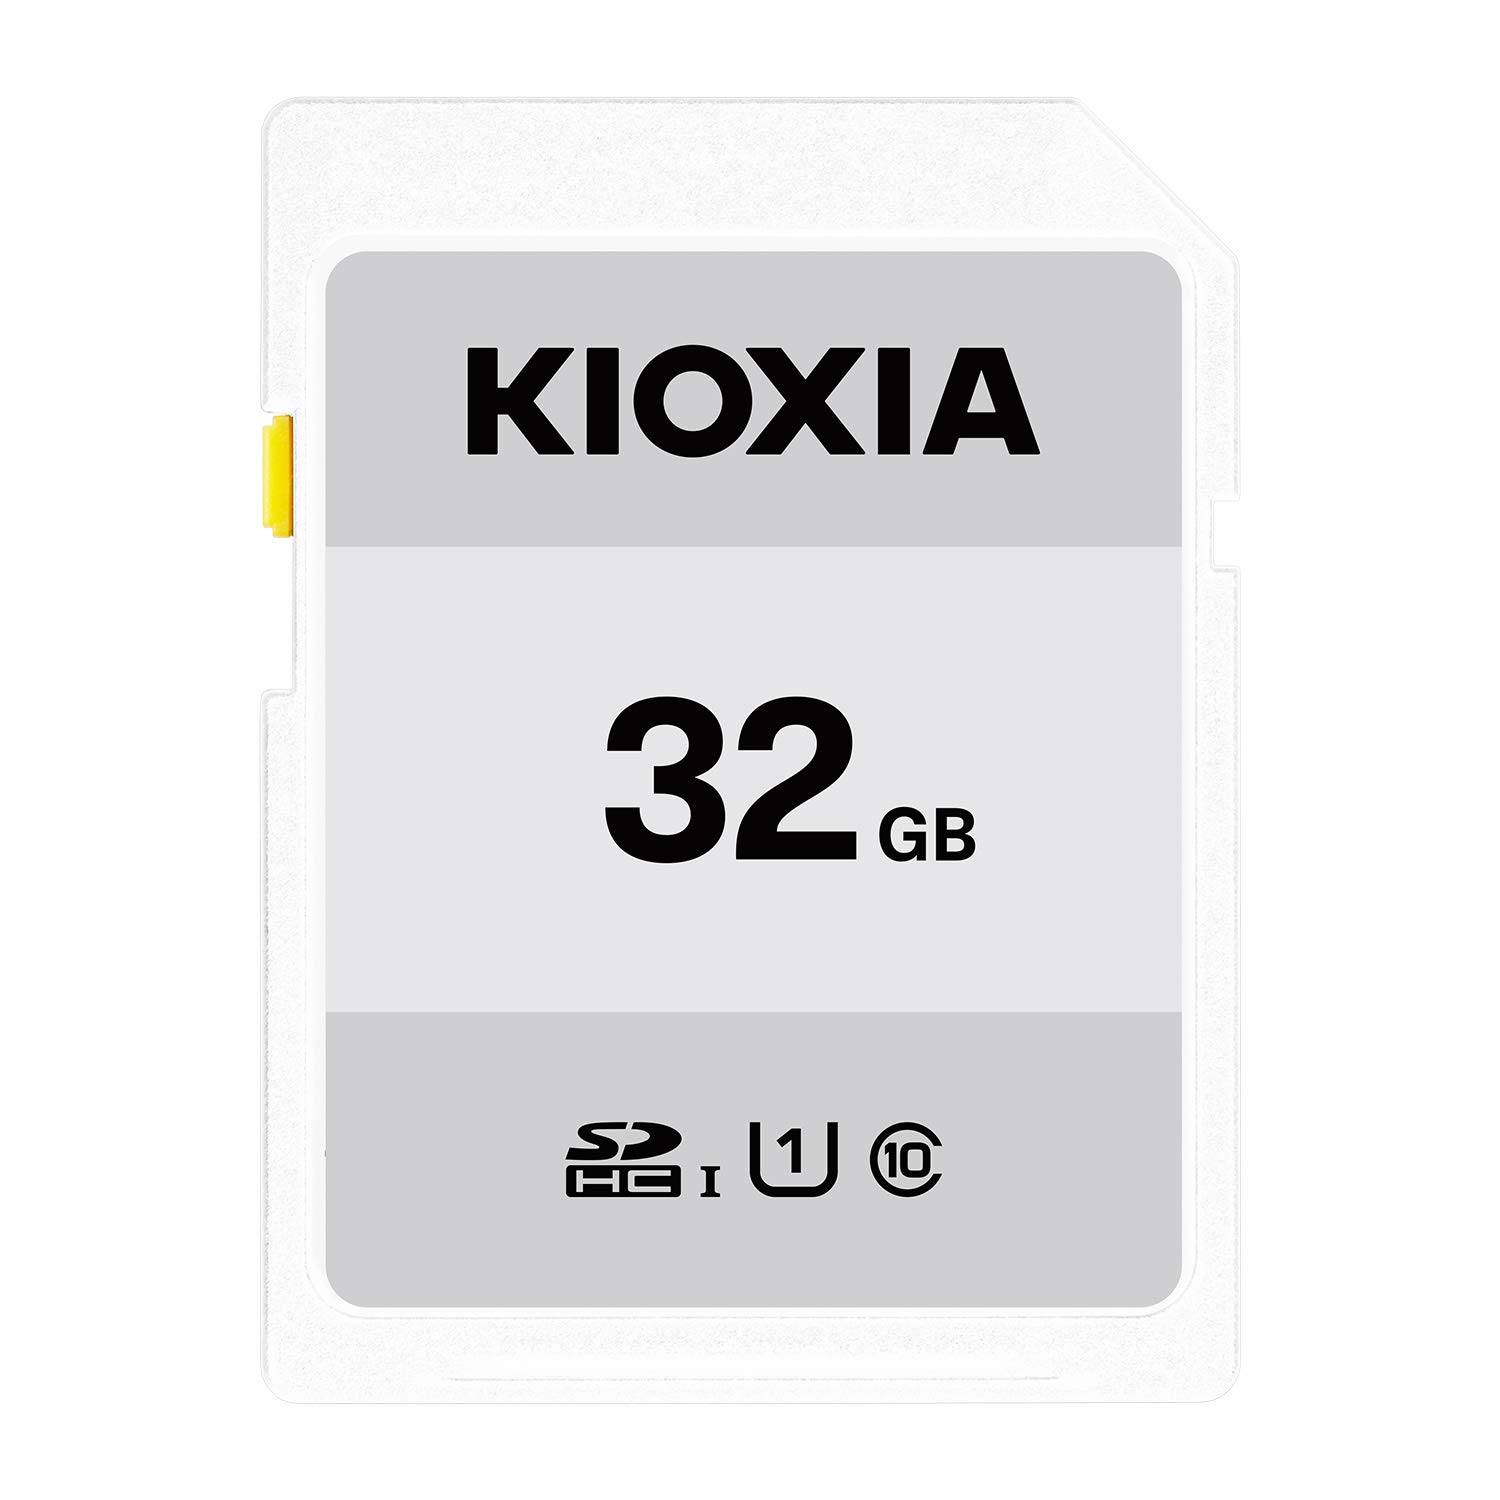 キオクシア(KIOXIA) 旧東芝メモリ SDHCカード 32GB UHS-I対応 Class10 (最大転送速度50MB/s) 日本製 国内正規品 メーカー保証3年 KTHN-NW032G